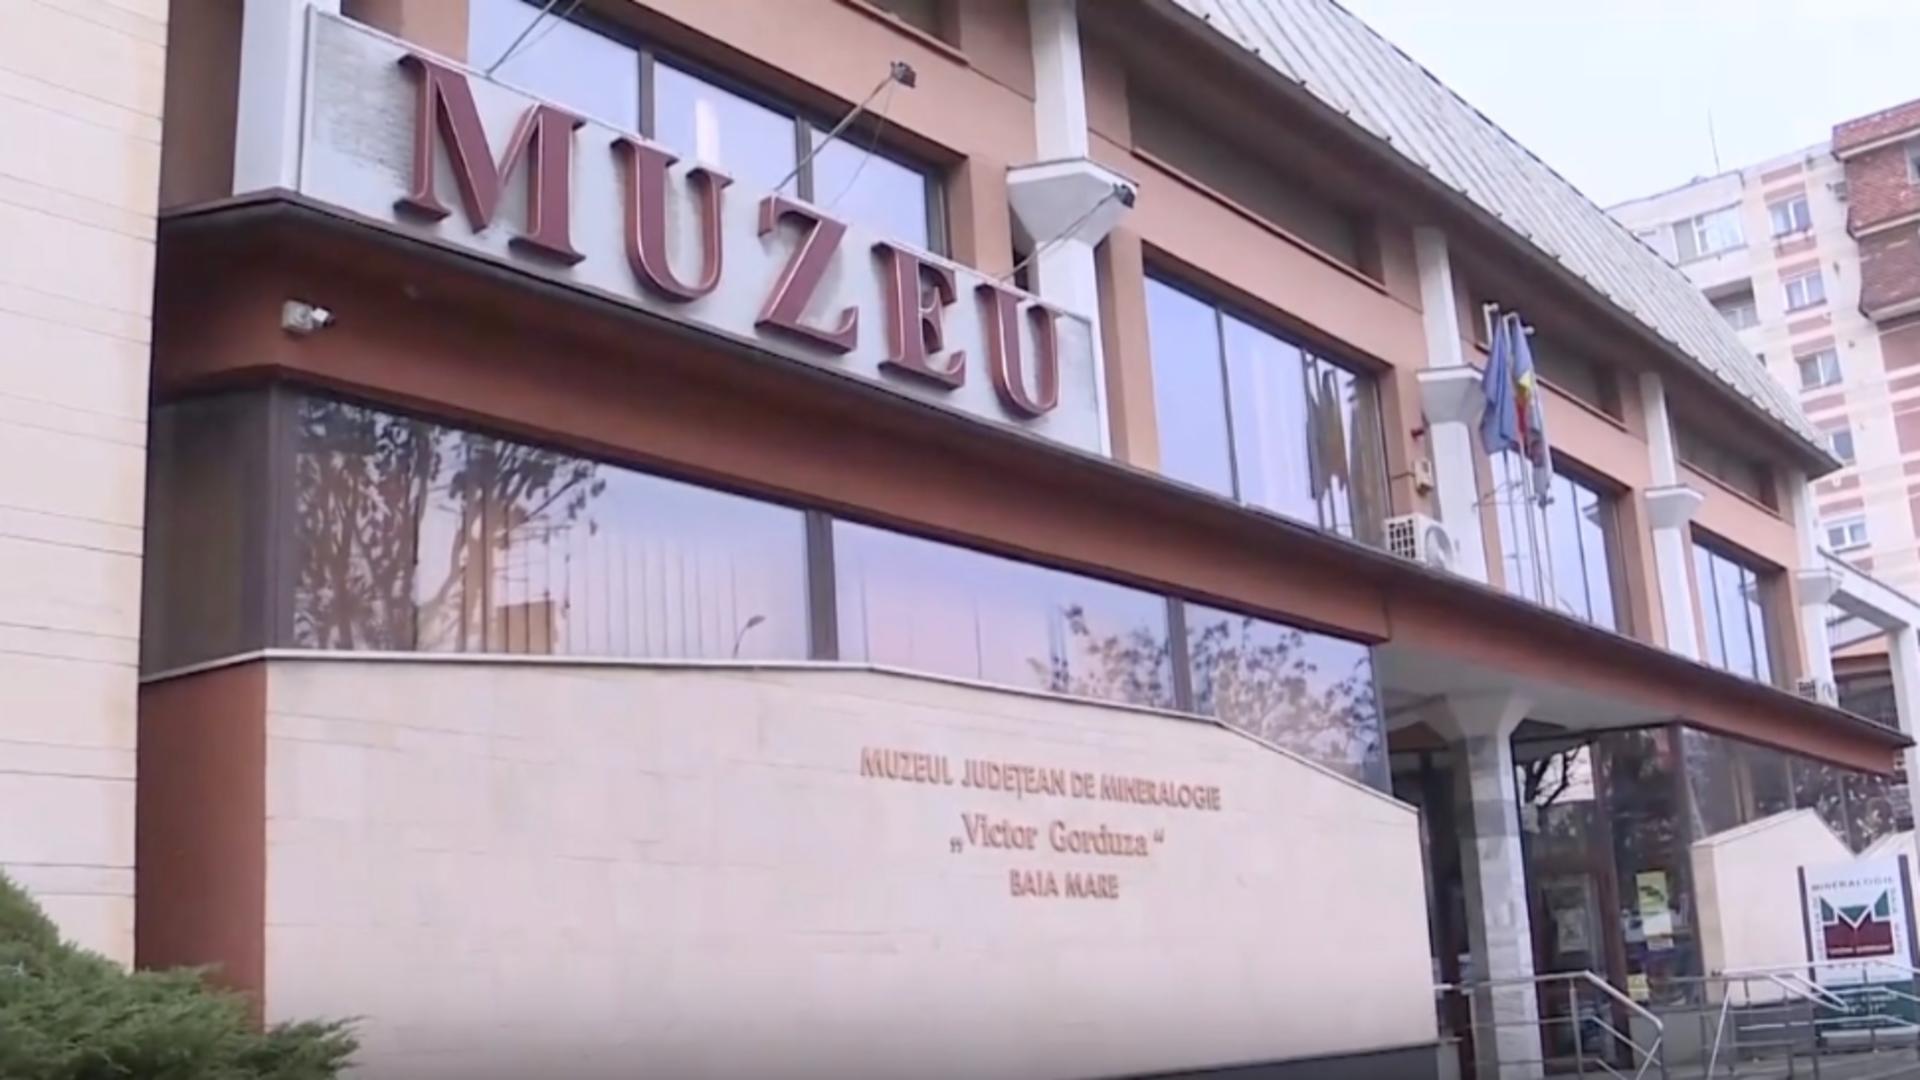 Comorile neștiute ale Maramureșului: expoziția Muzeului de Mineralogie, faimoasă în toată lumea – VIDEO